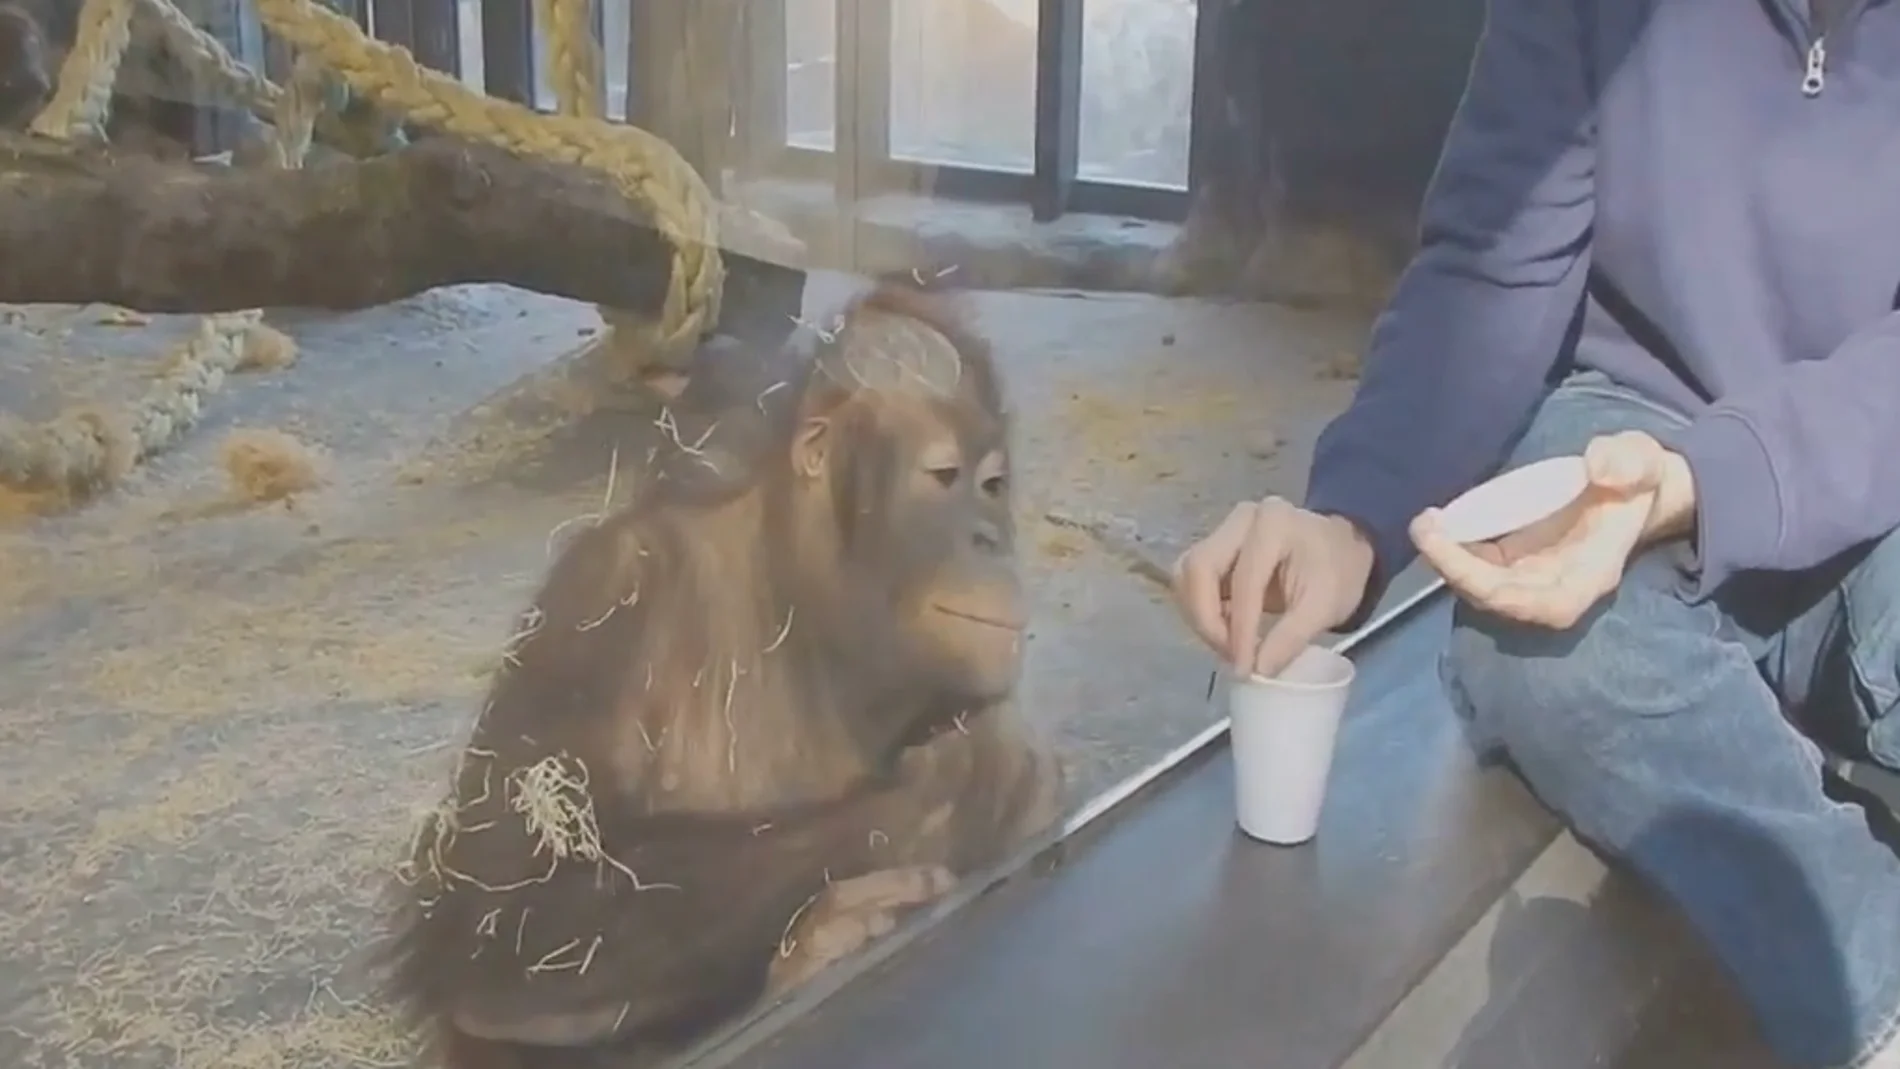 Orangután del zoo de Barcelona